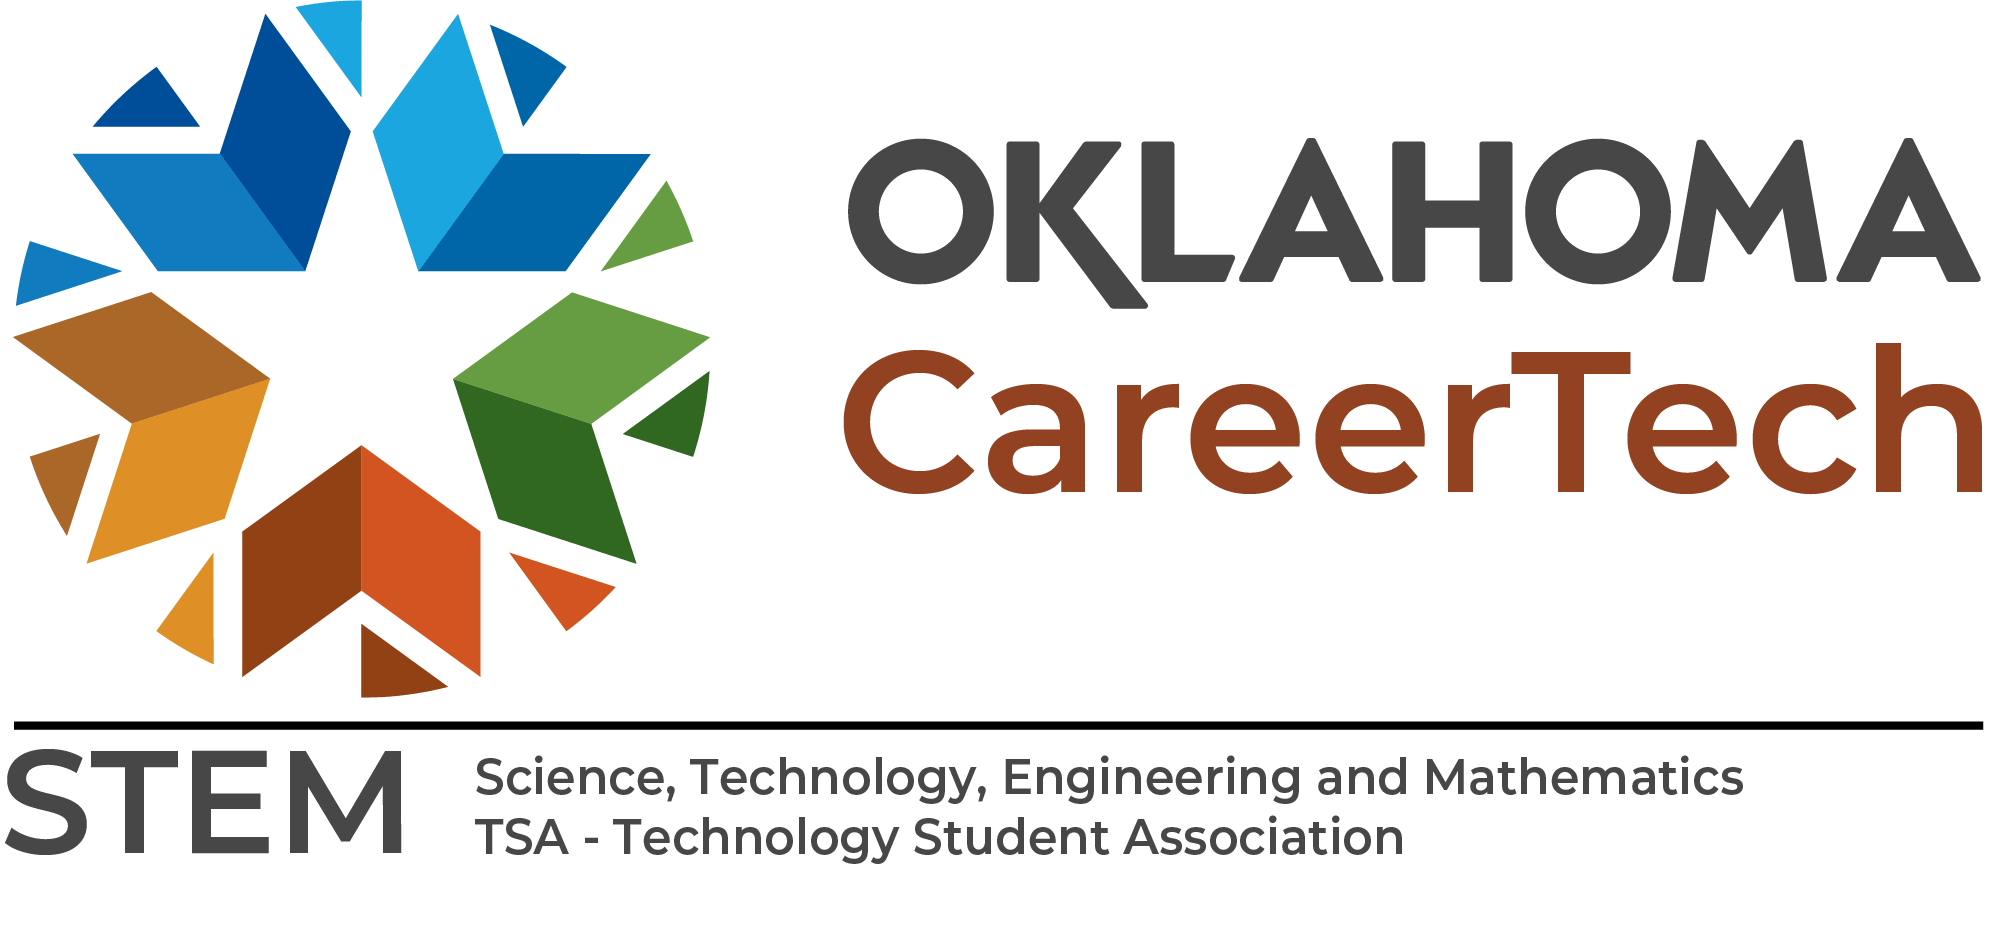 Oklahoma CareerTech